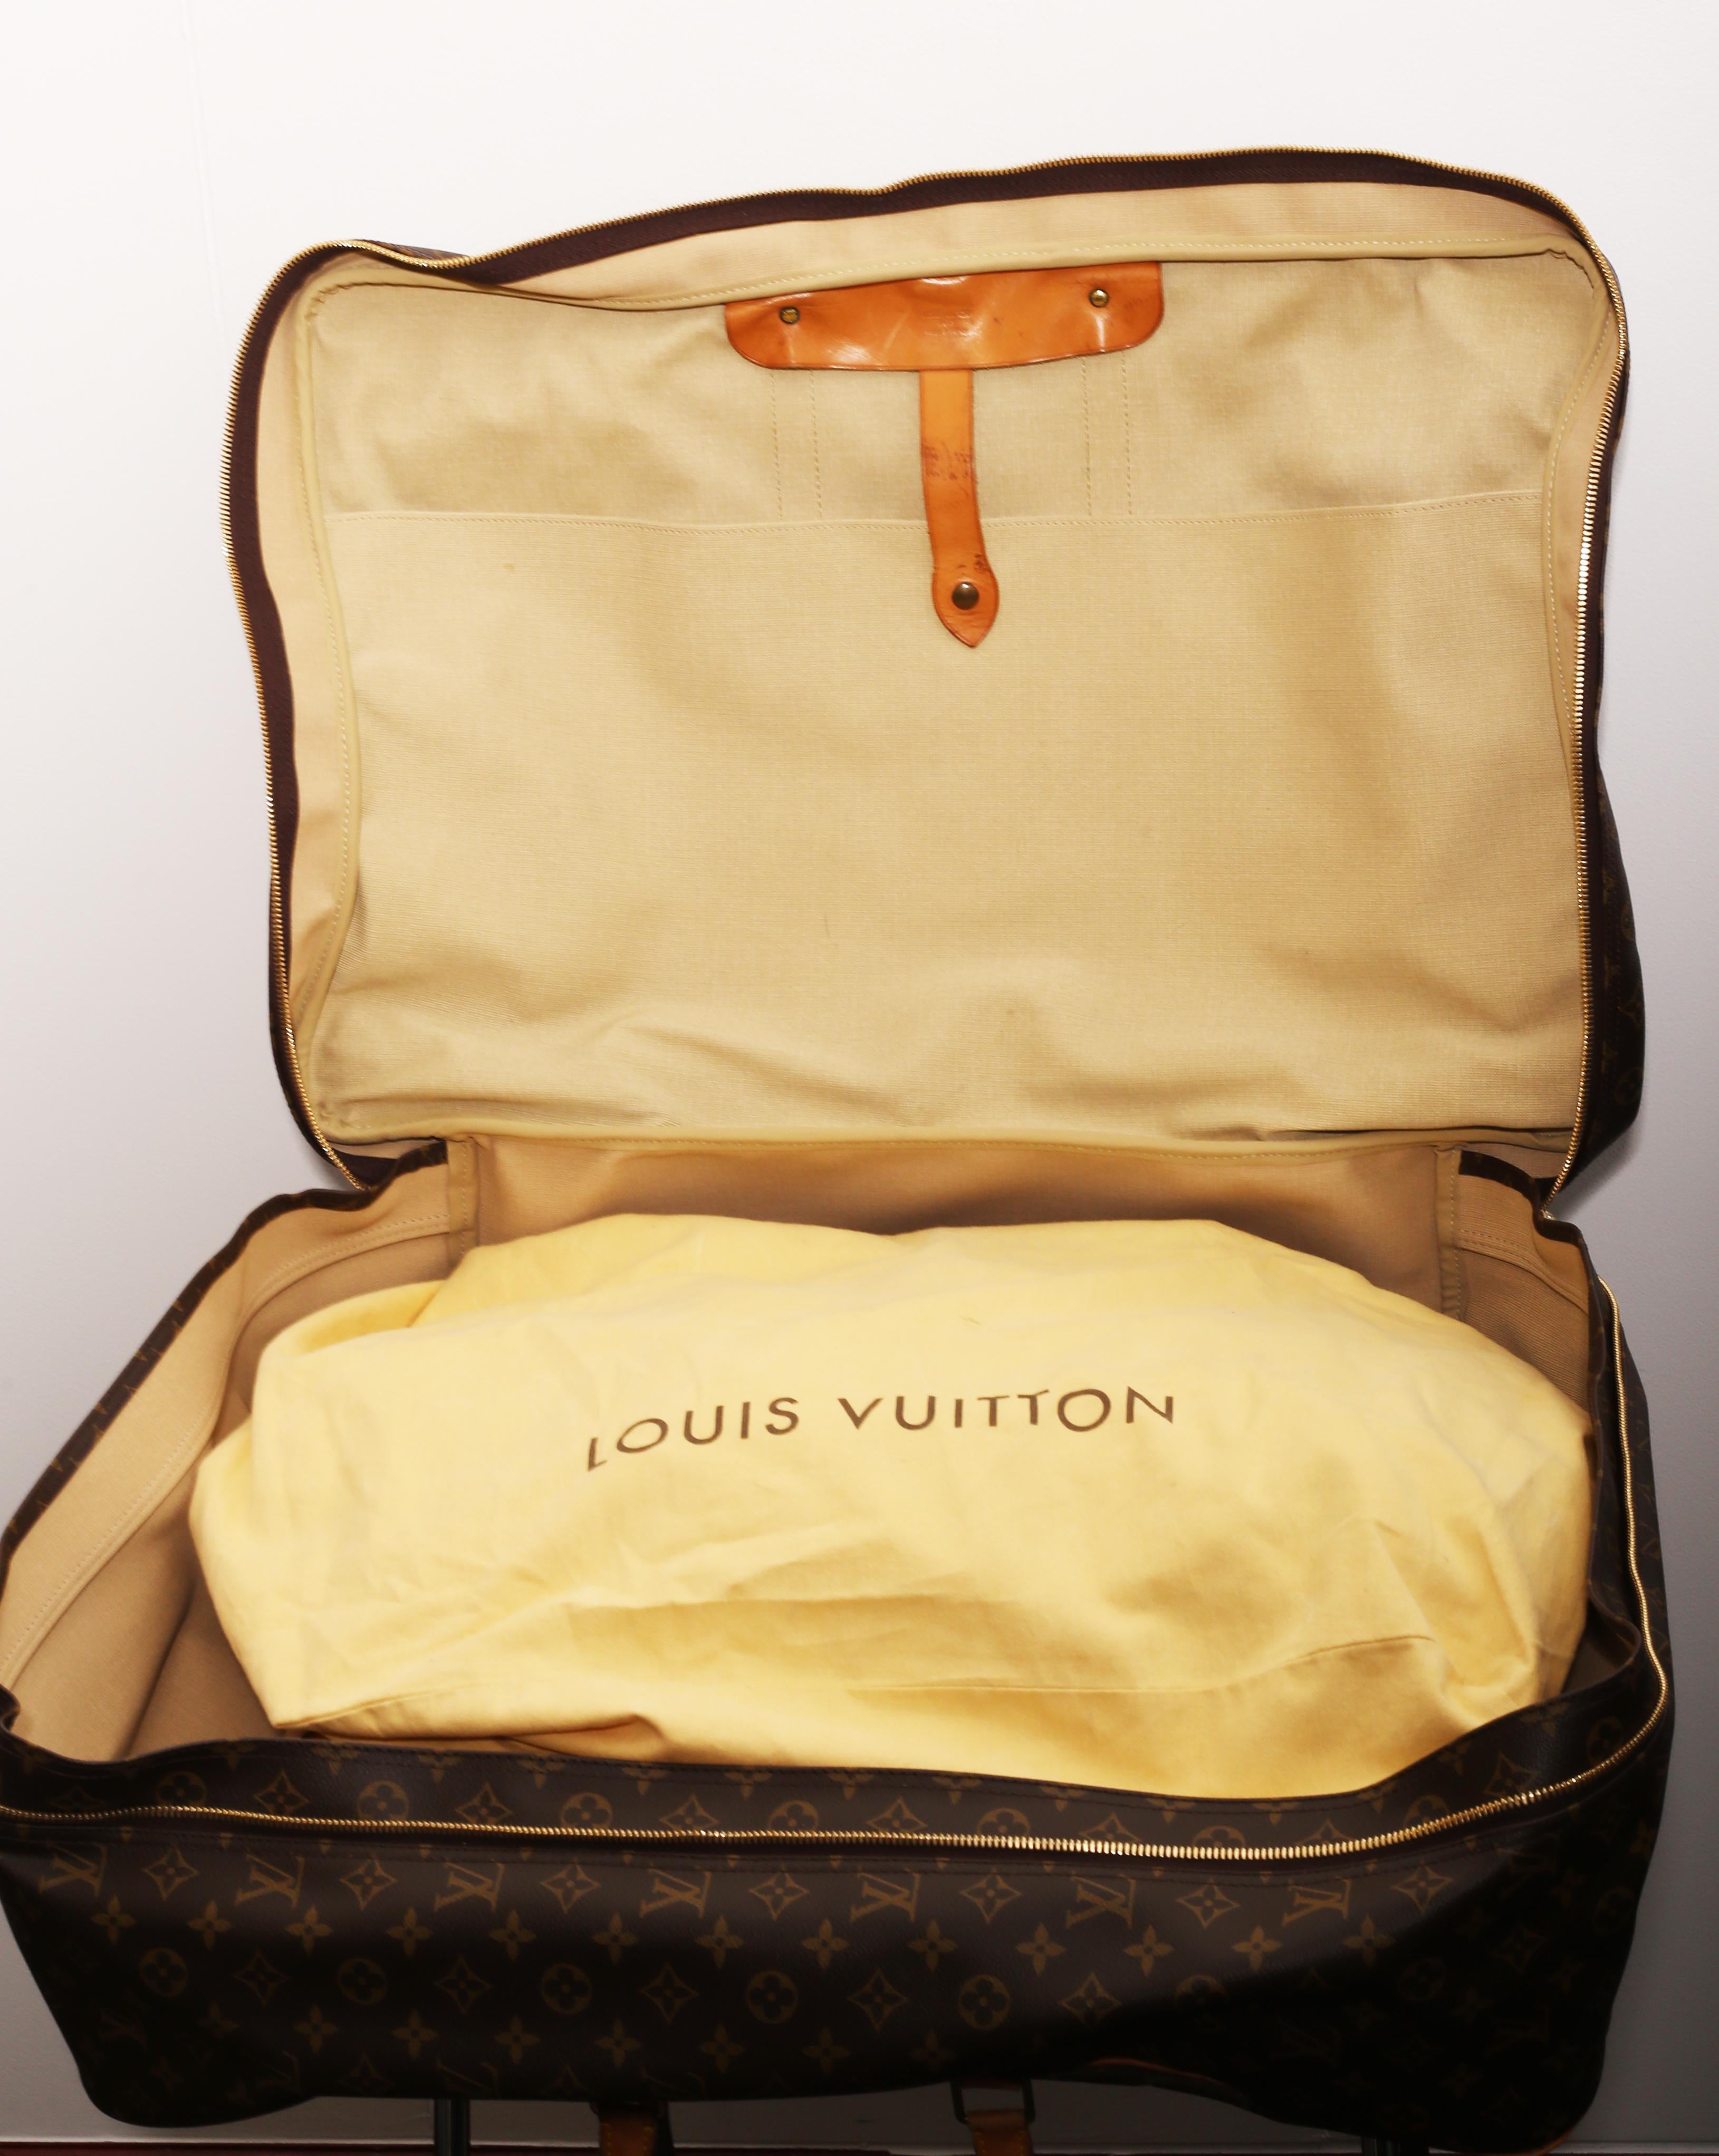 Louis Vuitton Monogram Sirius Suitcase 70cm Luggage Weekender Travel Bag 80s 1